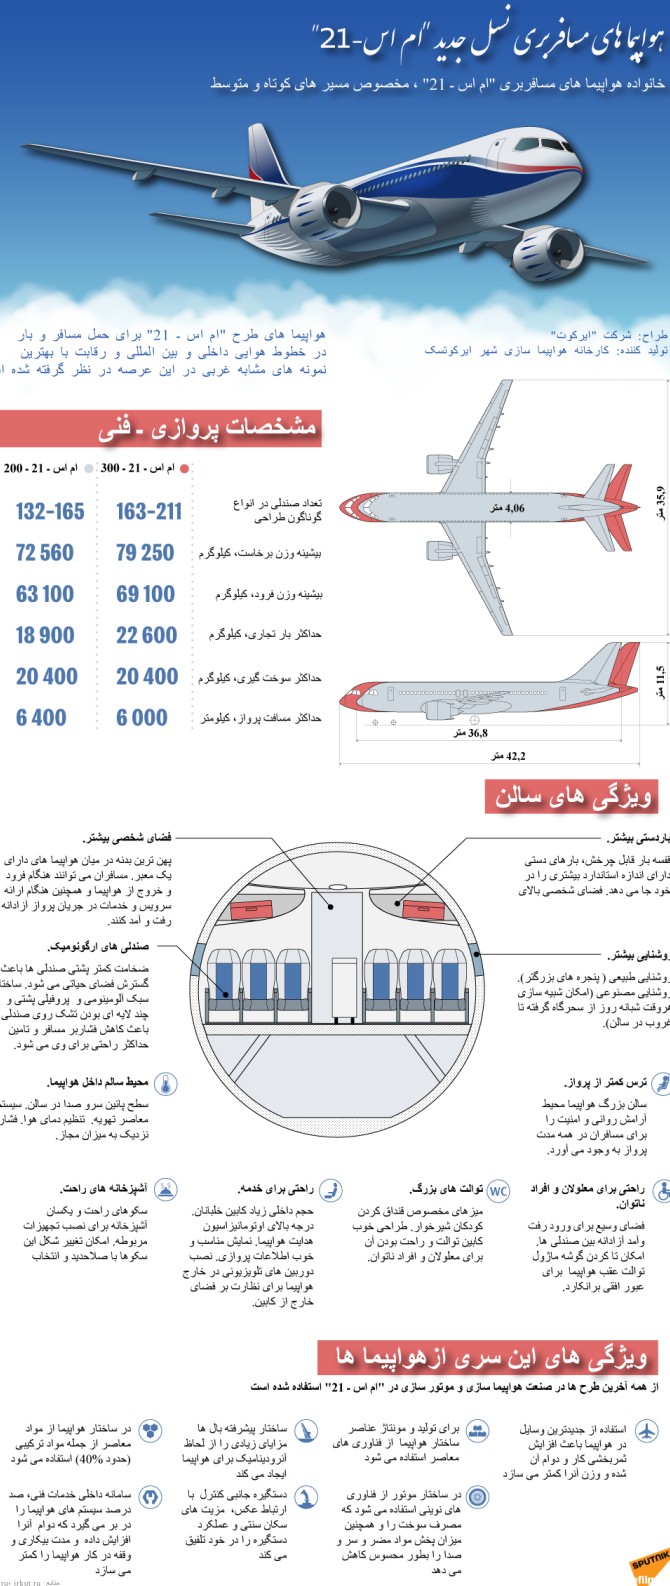 هواپیما های مسافربری نسل جدید ام اس ـ 21 - 14.07.2017, اسپوتنیک ایران